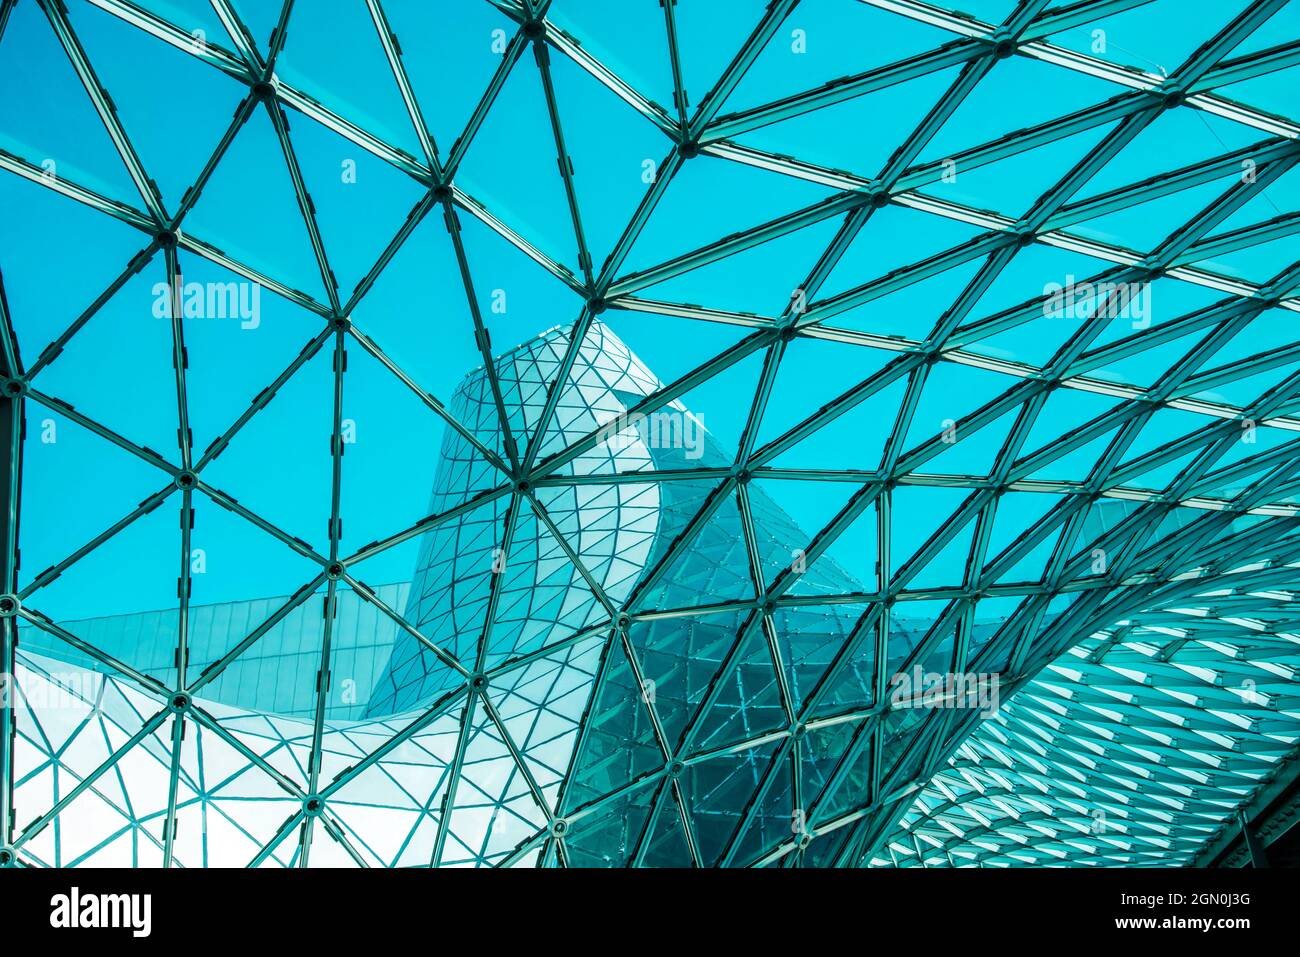 Toit en verre incurvé à faible angle avec formes géométriques d'un bâtiment moderne conçu dans un style futuriste Banque D'Images